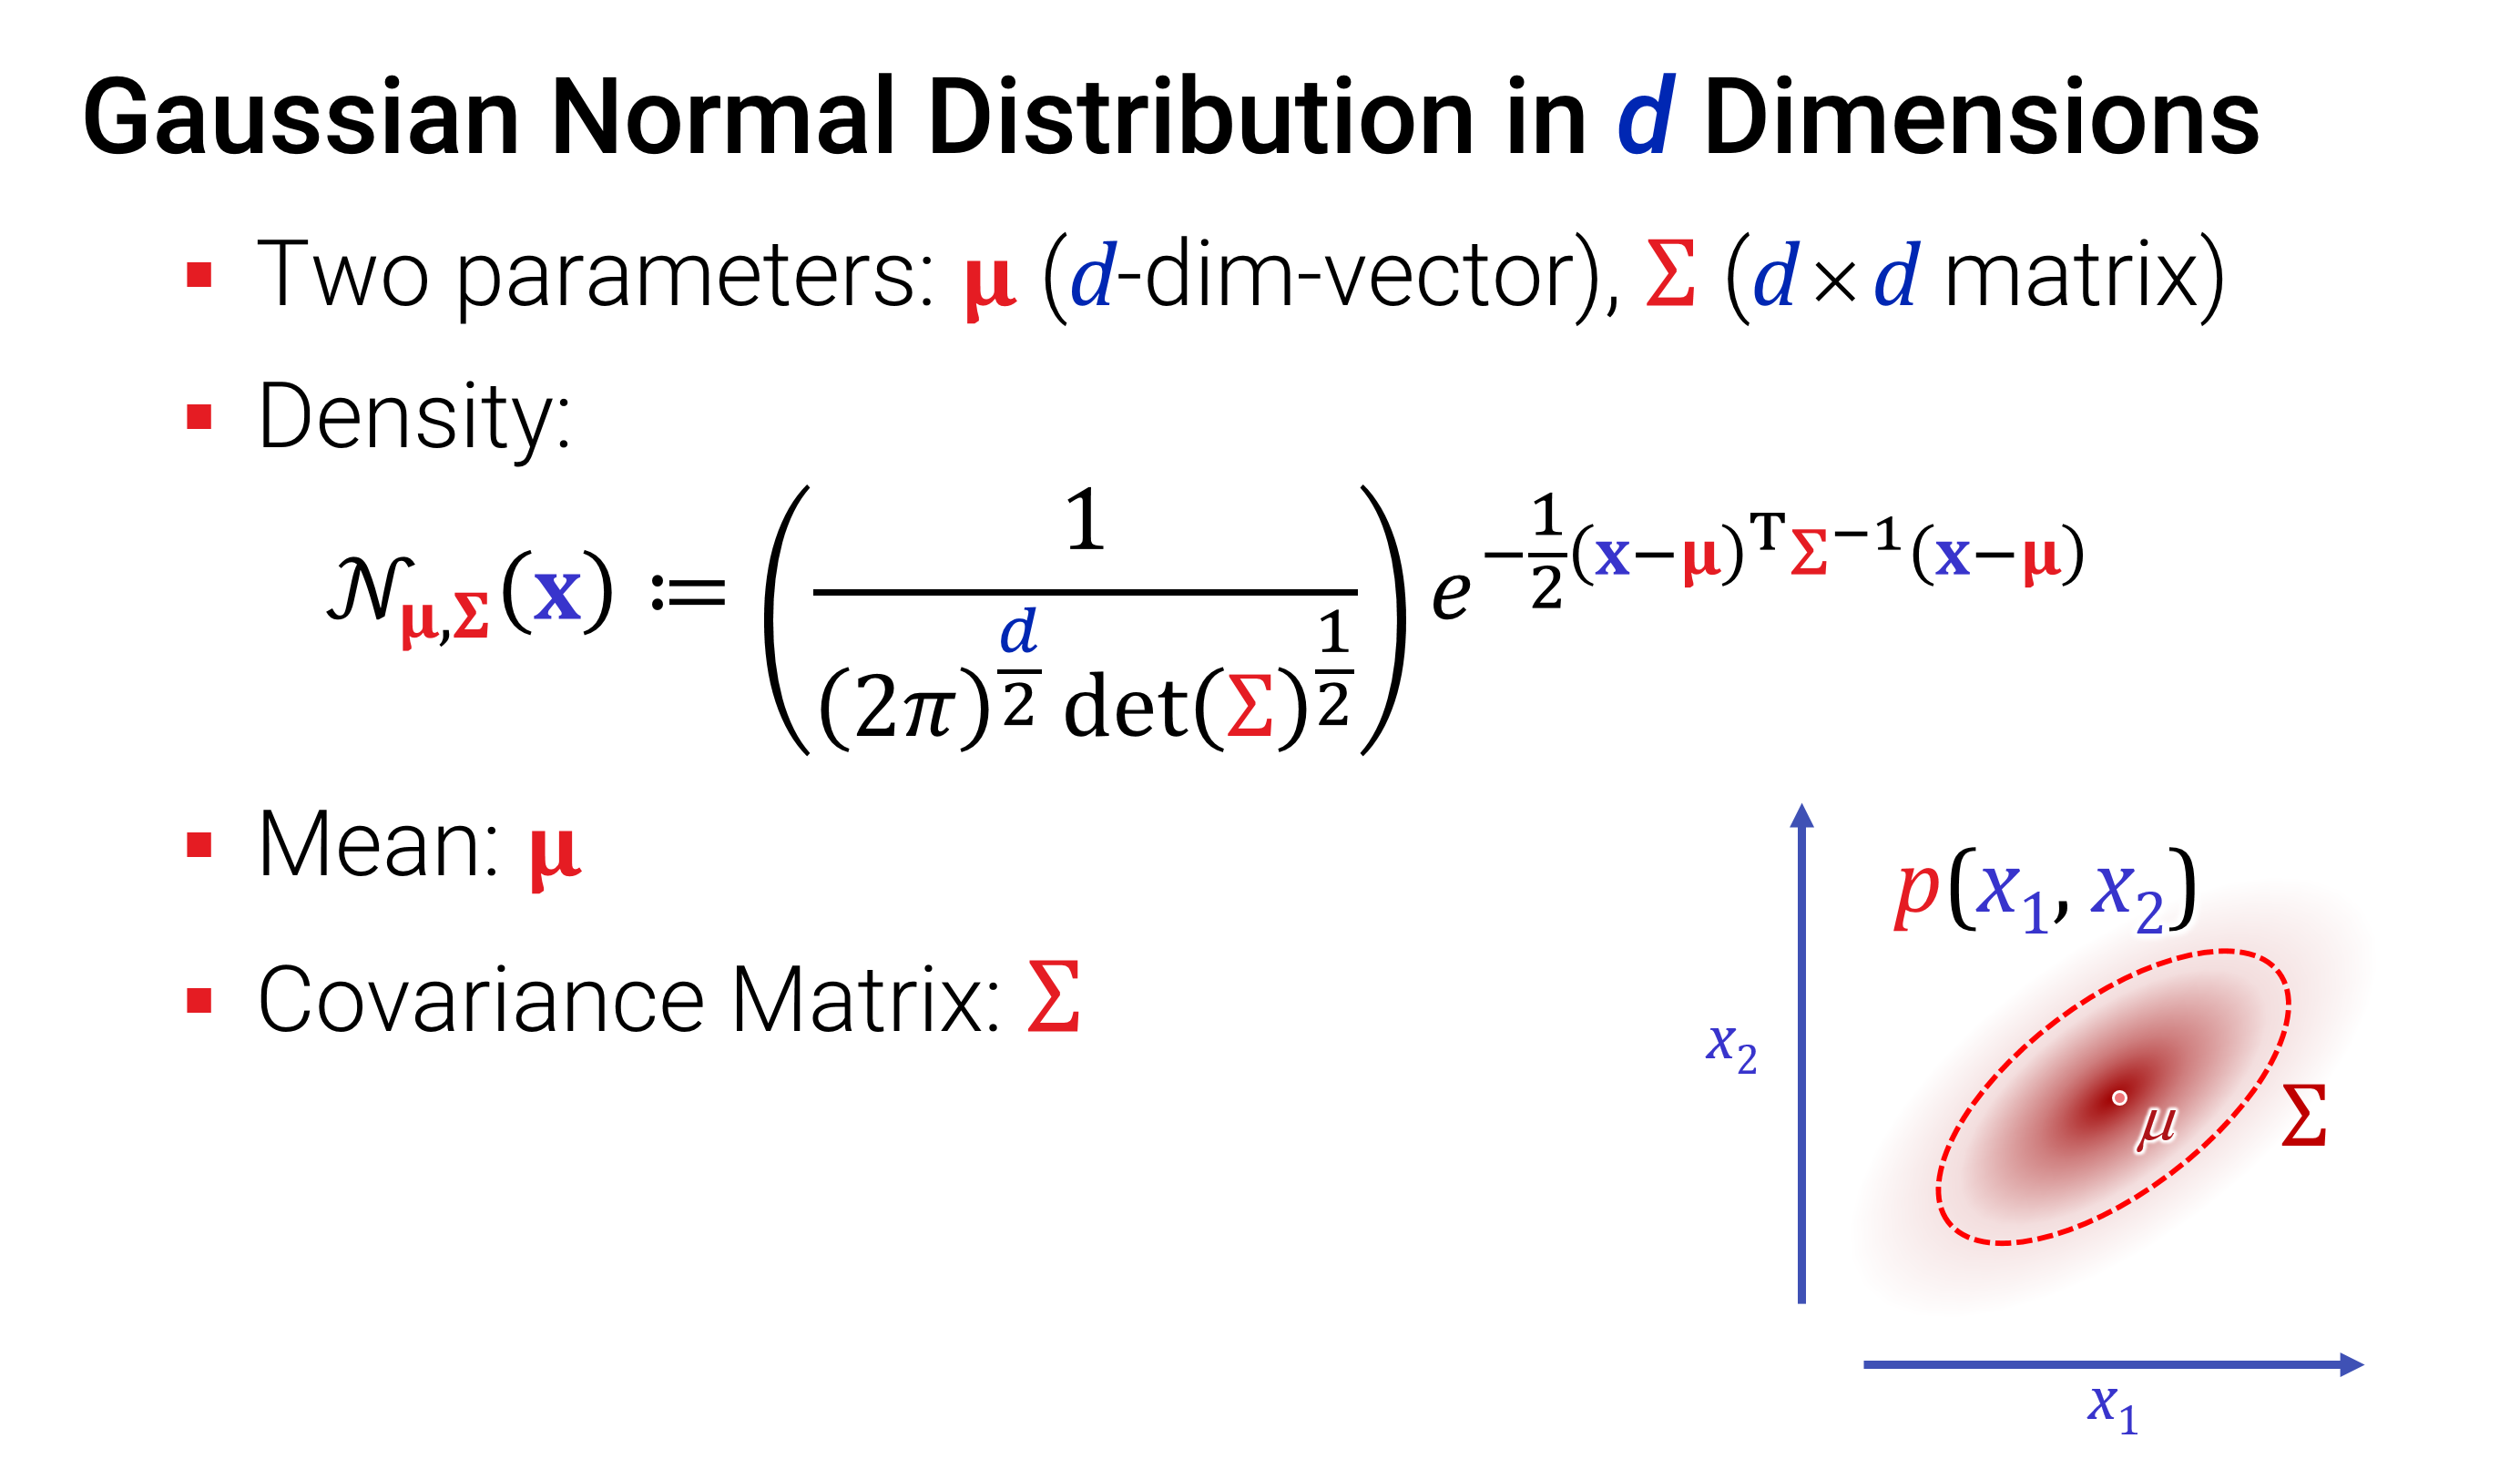 Abbildung: Die multivariate Normalverteilung ist durch einen Erwartungswert \boldsymbol{\mu} und eine Kovarianzmatrix \boldsymbol{\Sigma} charakterisiert. Wenn die Kovarianzmatrix keine Diagonalmatrix ist, dann gibt es eine Scheerung in der Verzerrung des Einheitsgauss, die dazu führt, das Variablen linear korreliert sind. Der Querschnitt der Verteilung (gemeint ist die Kurve p(\mathbf{x})= const.) wird elliptisch (statt kreisrund).